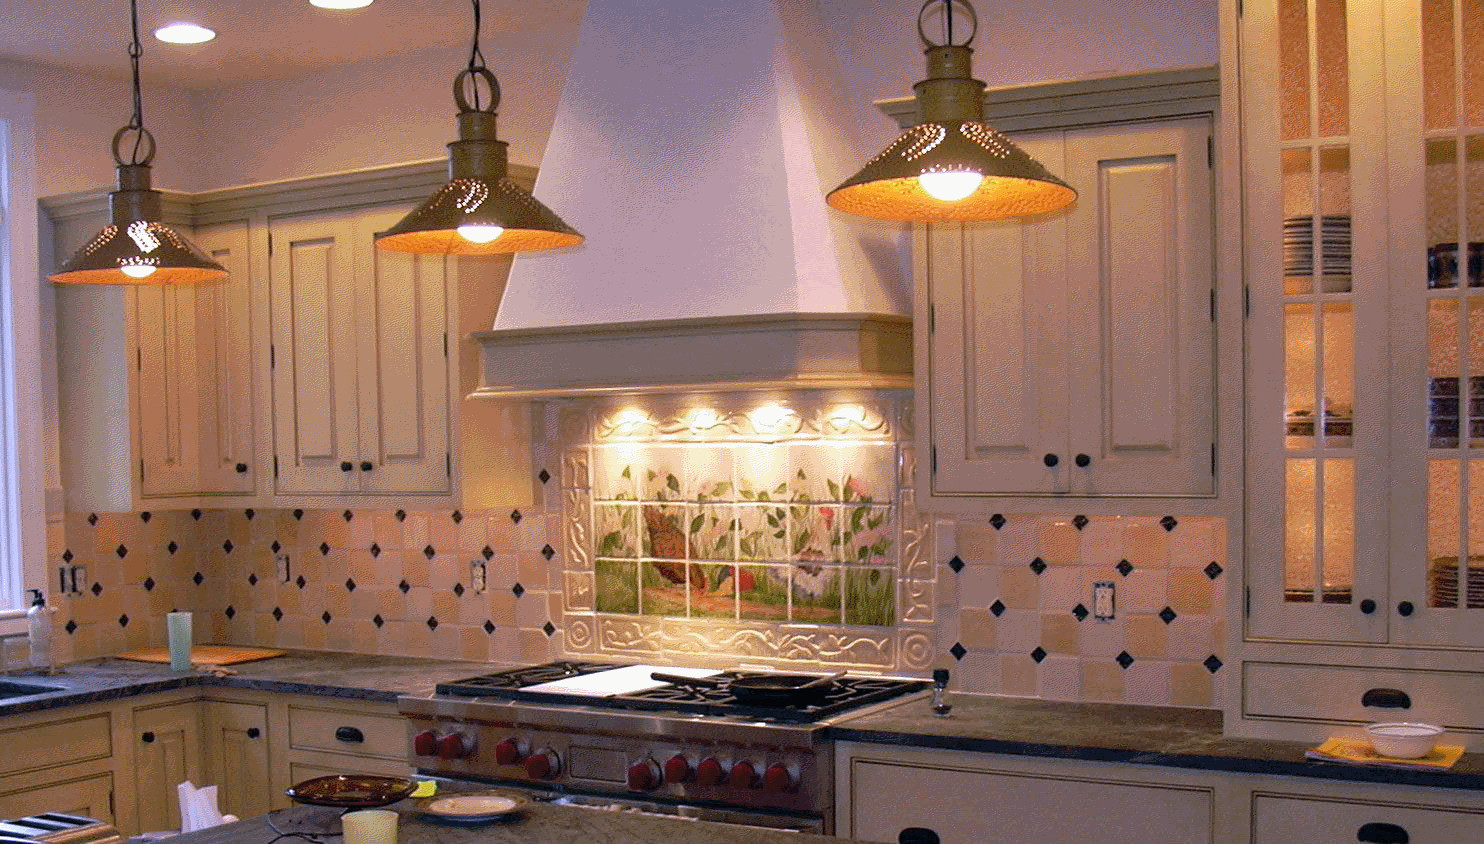 Decorative Tiles For Kitchen
 Decorative Tiles